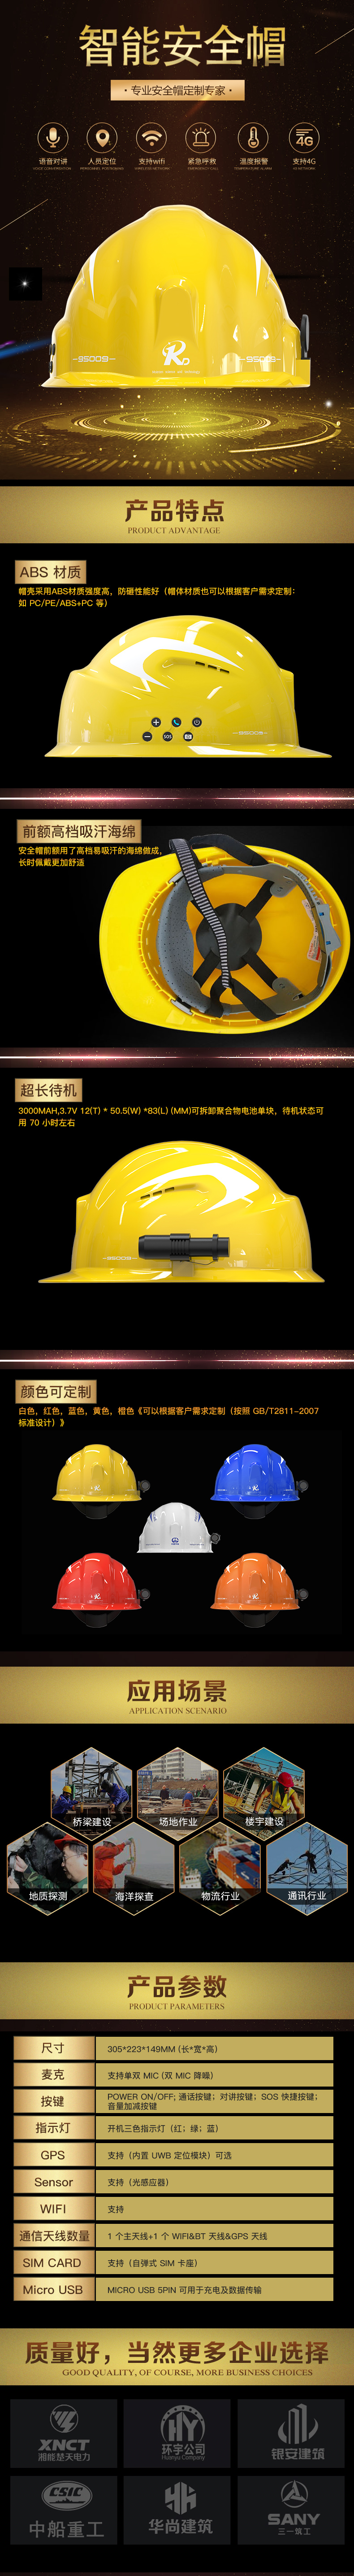 保安盾 RD-AQM02 定位对讲一键报警 防砸防刺保护头部安全帽-黄色